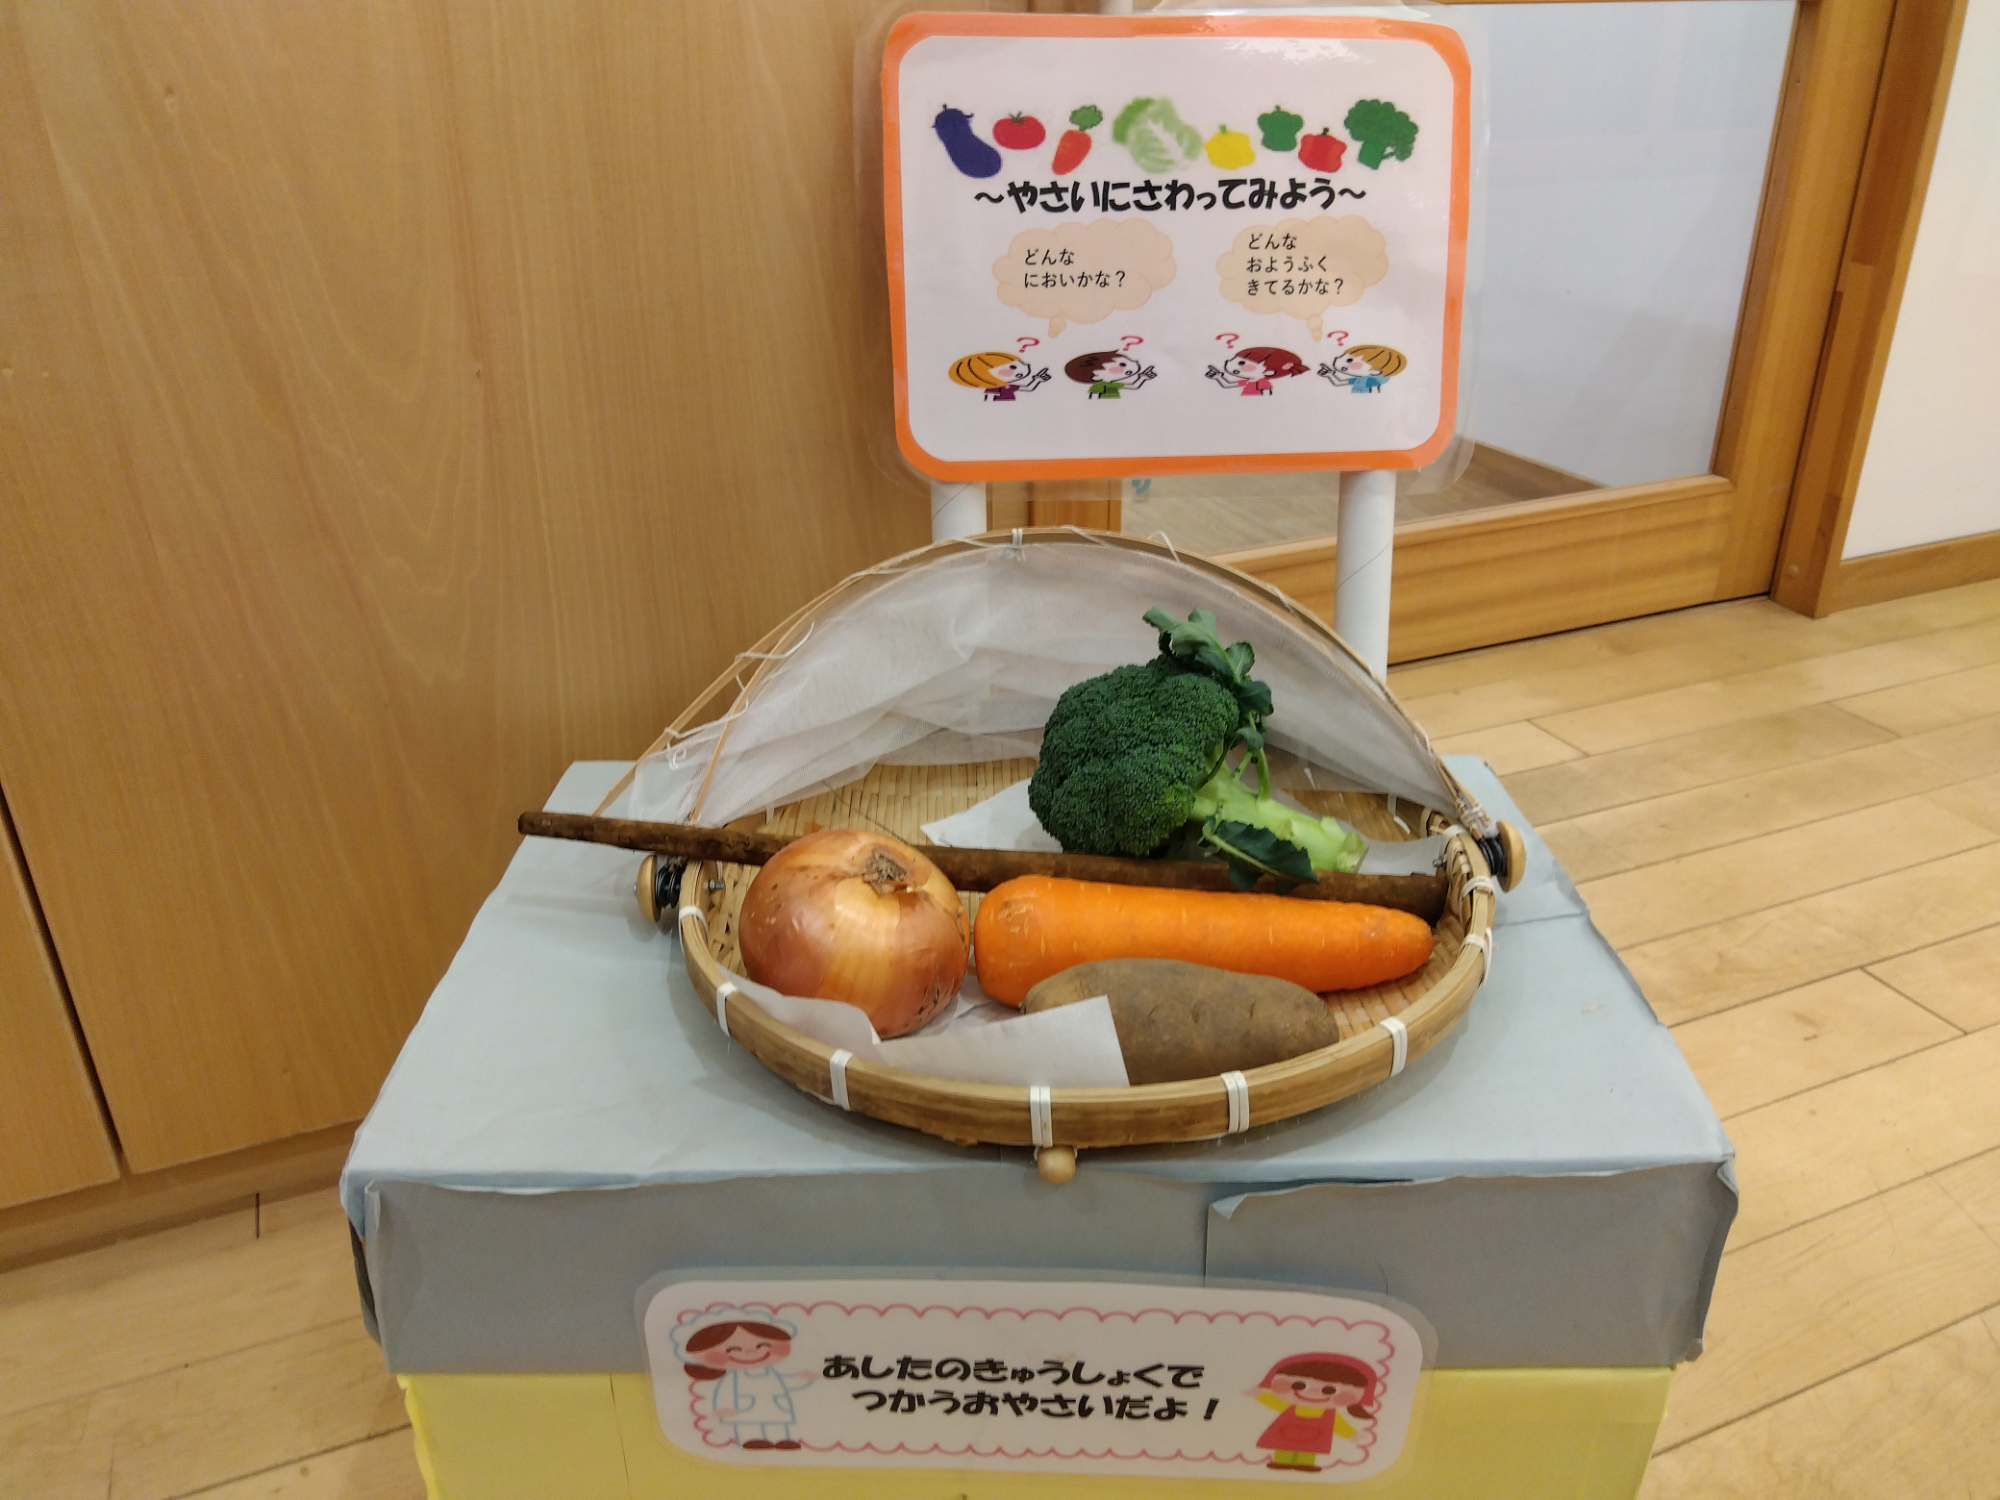 展示された野菜